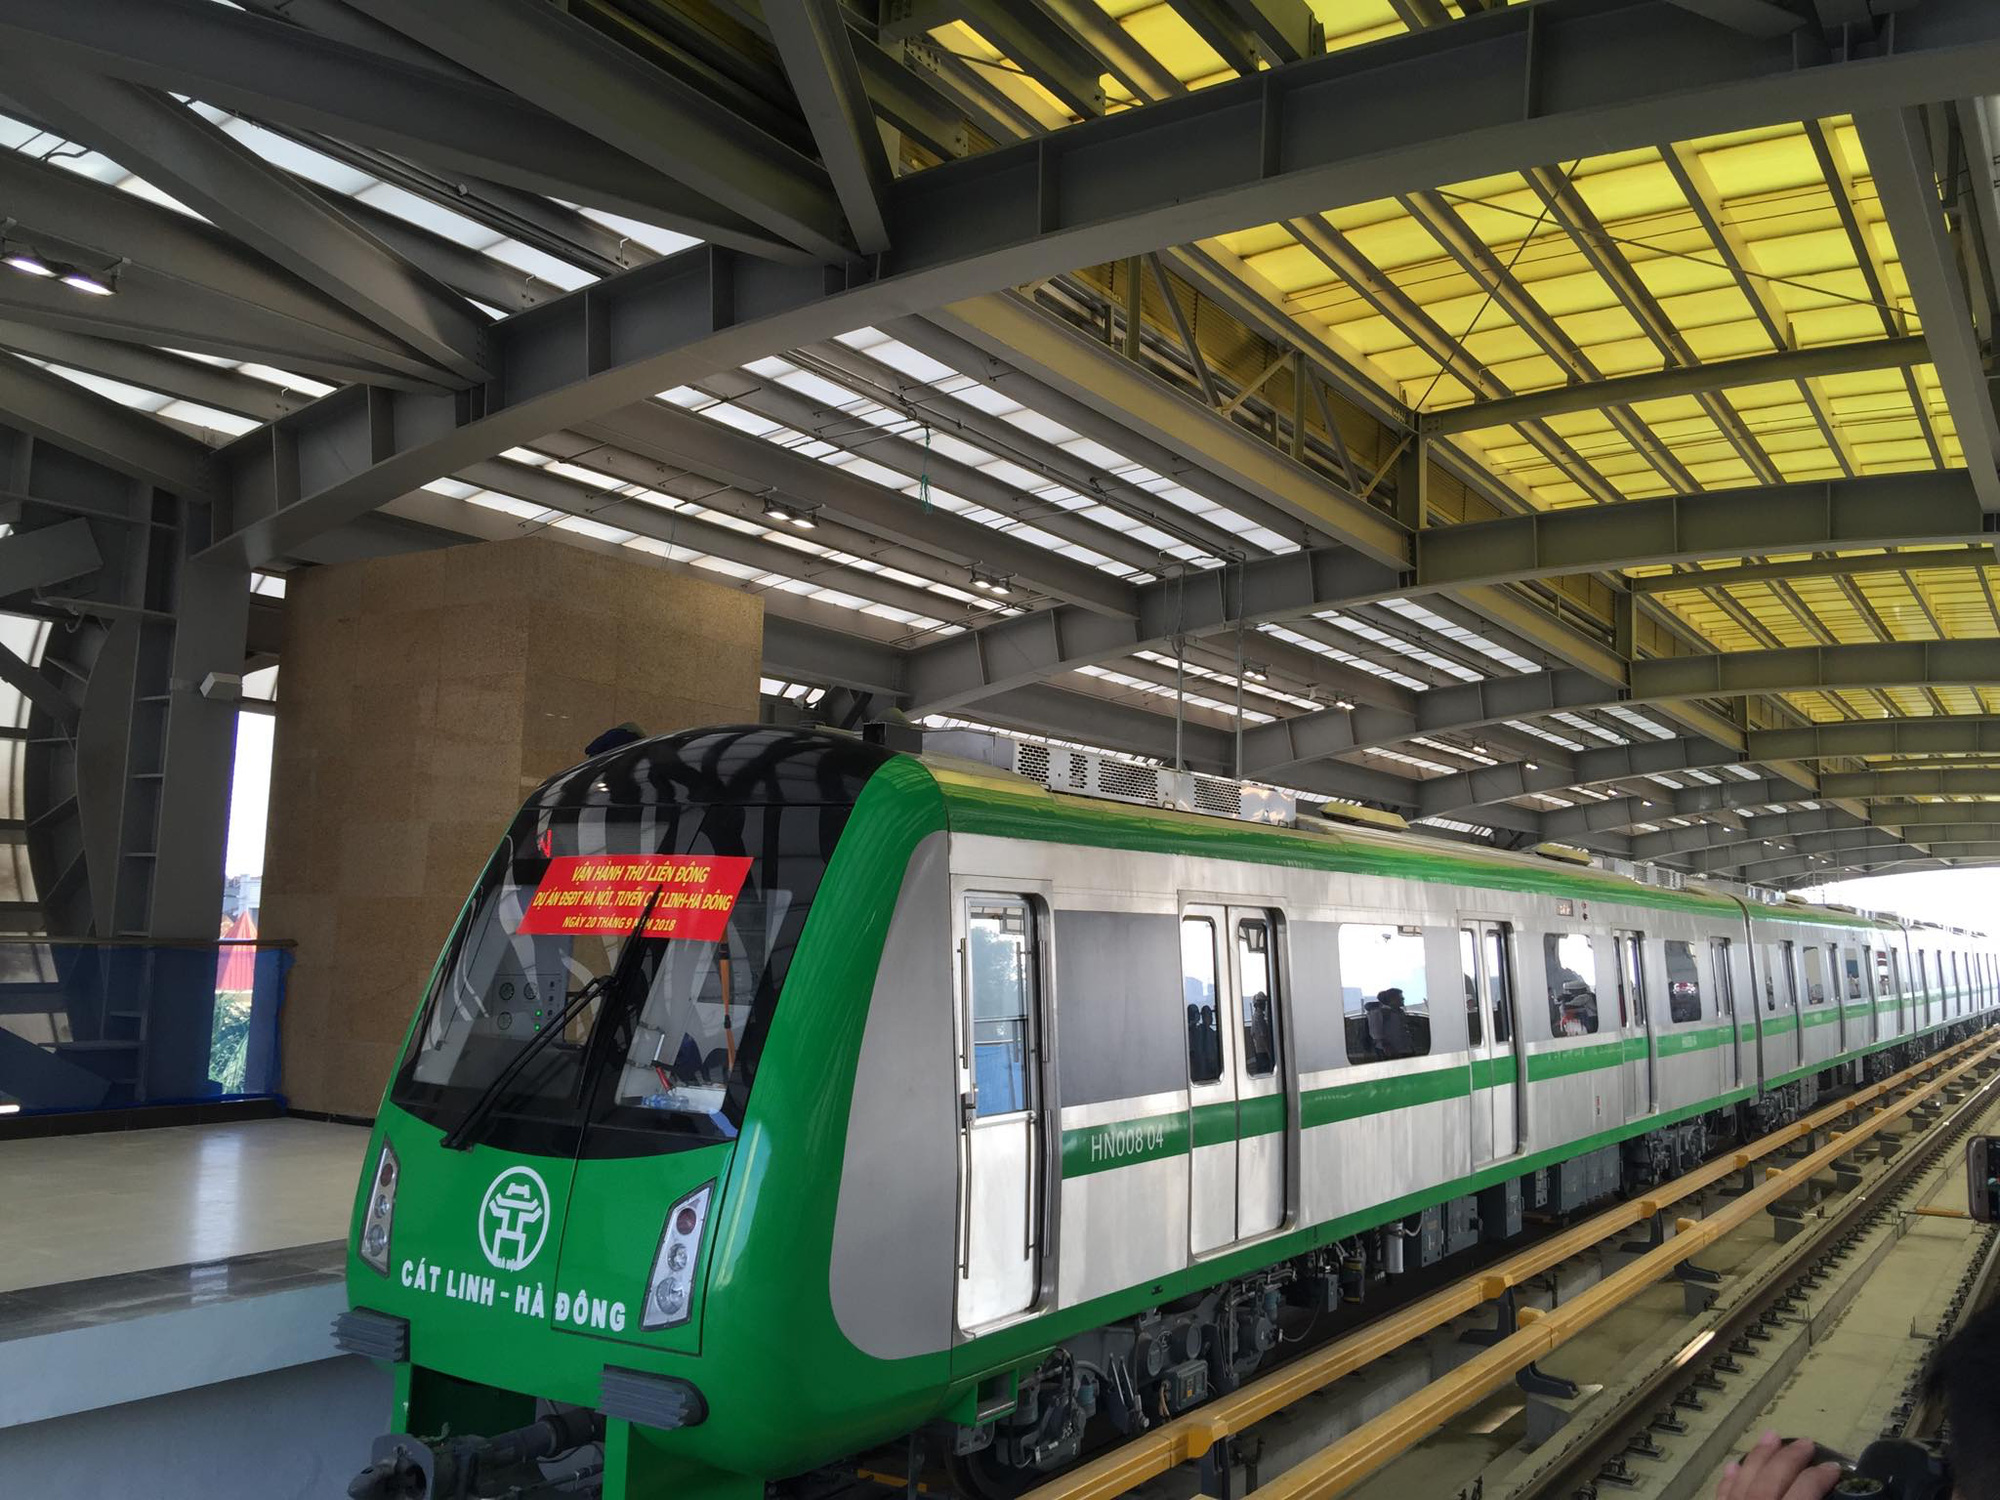 Đường sắt Cát Linh - Hà Đông chuẩn bị bàn giao cho Hà Nội vận hành thương mại - Ảnh 1.